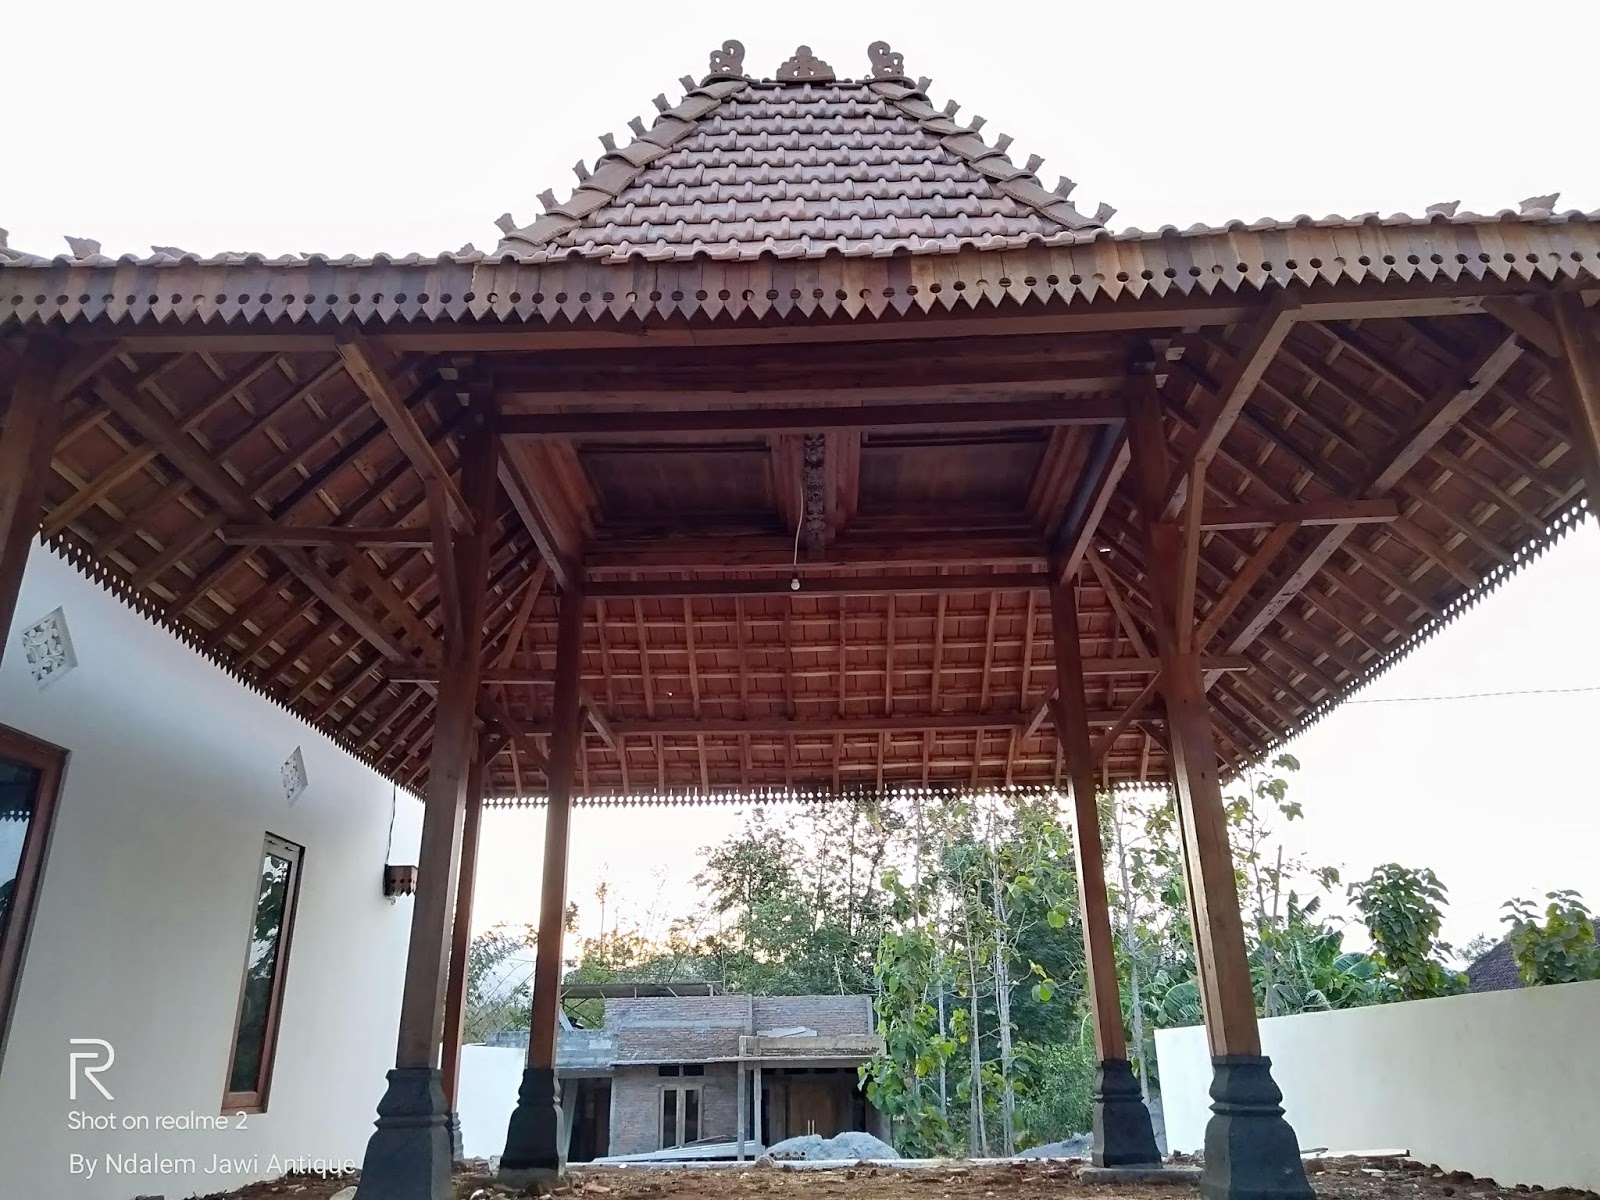 Ndalem Jawi Antique Kumpulan 4 Model Rumah Terbaru Dan Terlaris